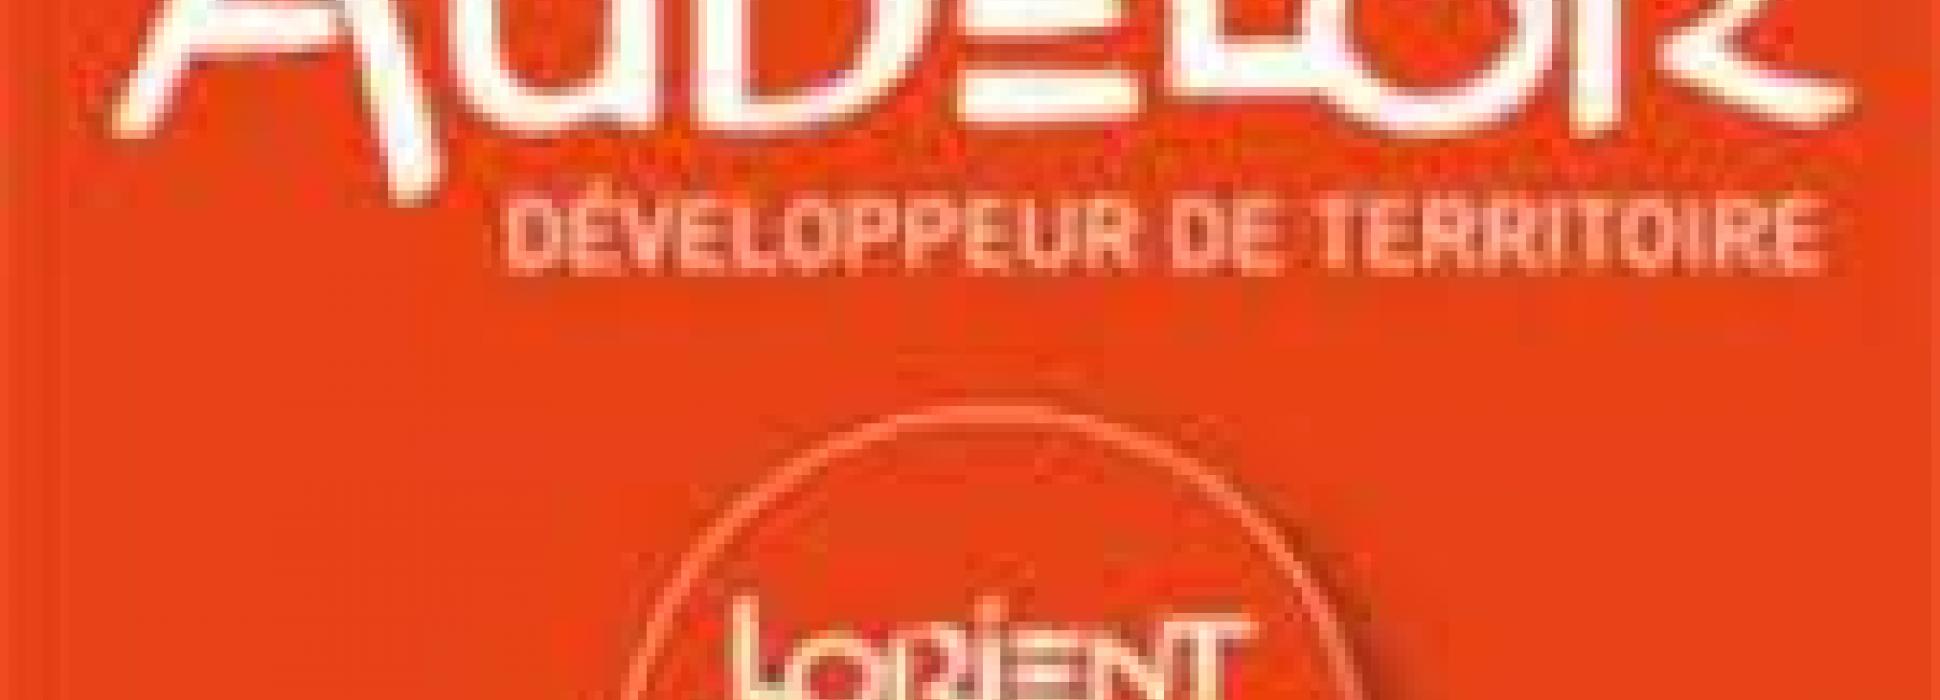 Le développeur de territoire AudéLor valide la création d’un fonds d’un million d’euros pour les entreprises de Lorient Agglomération